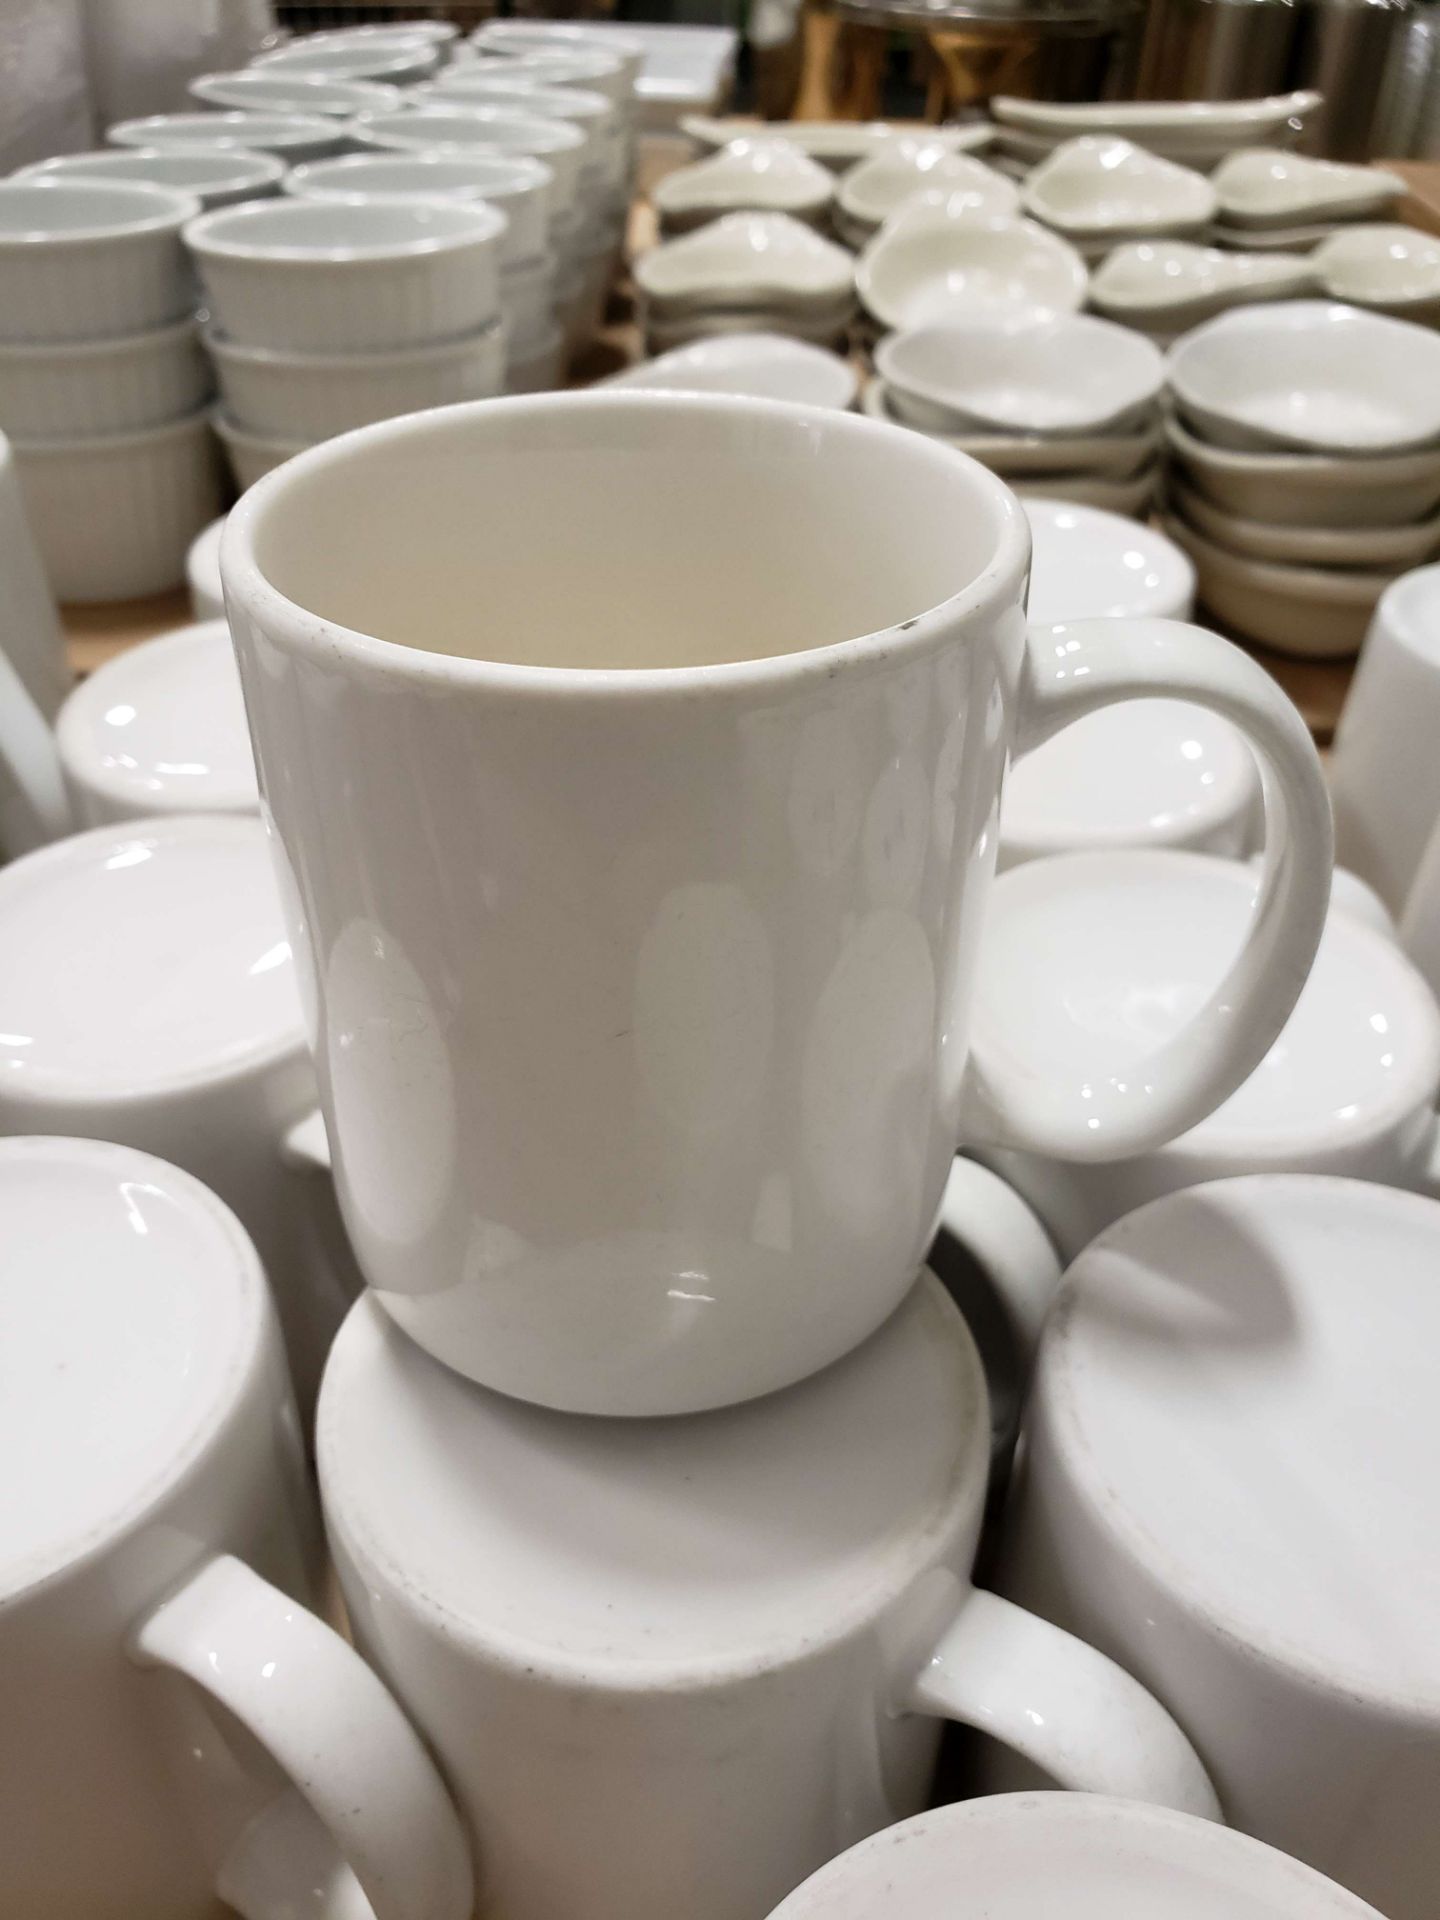 6 oz White Coffee Mug - Lot of 14